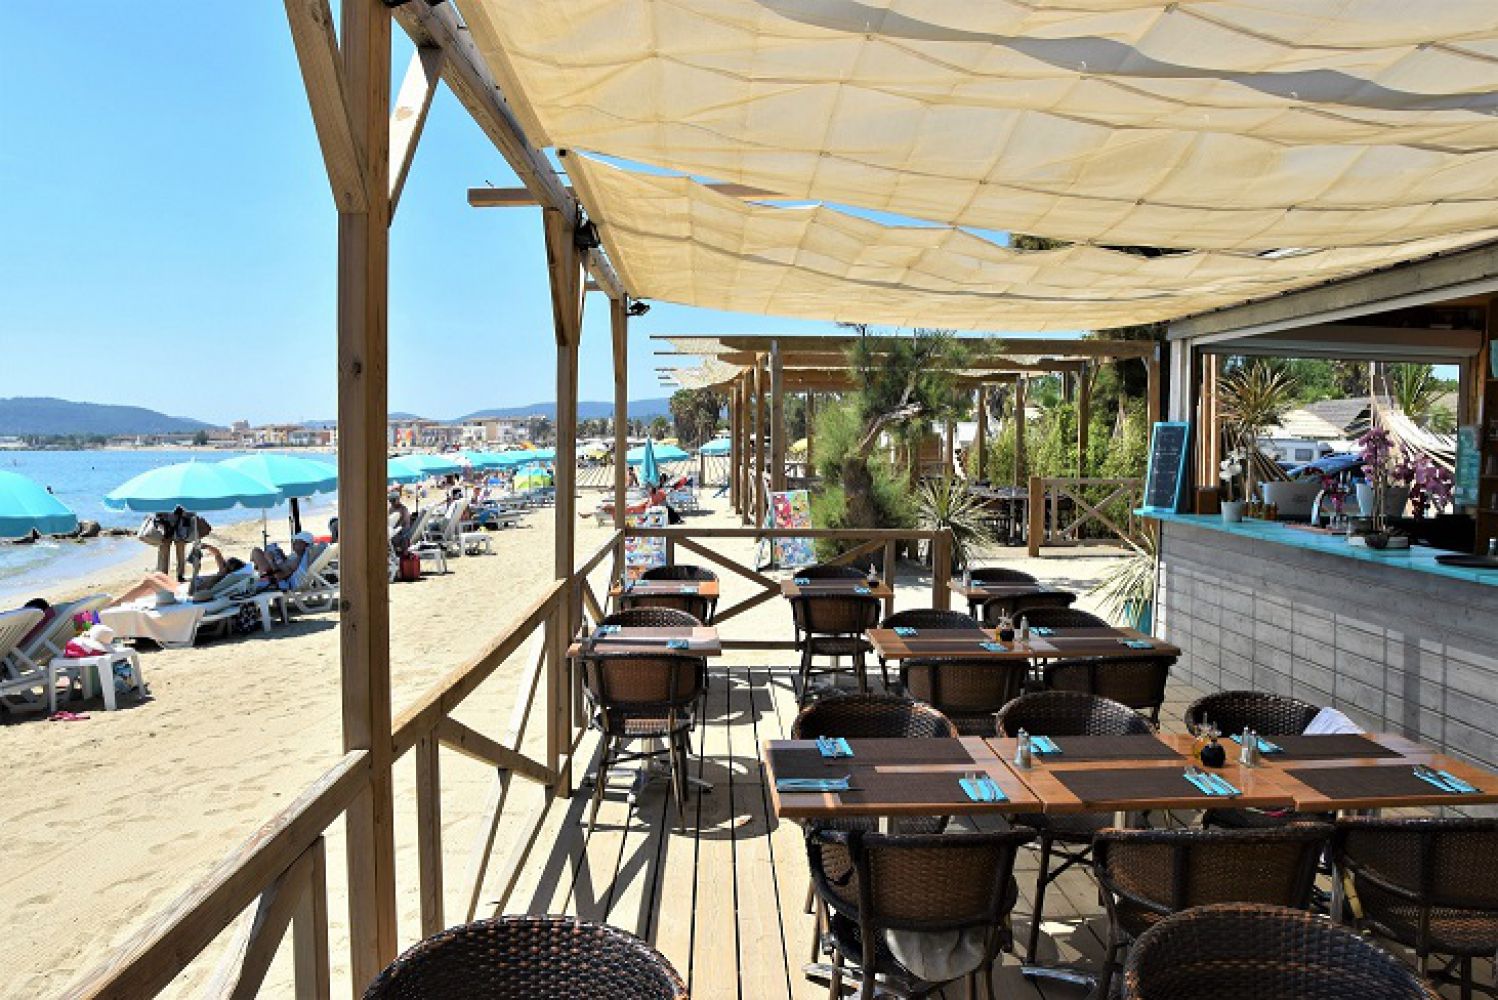 Restaurant Le 6 plage in Grimaud